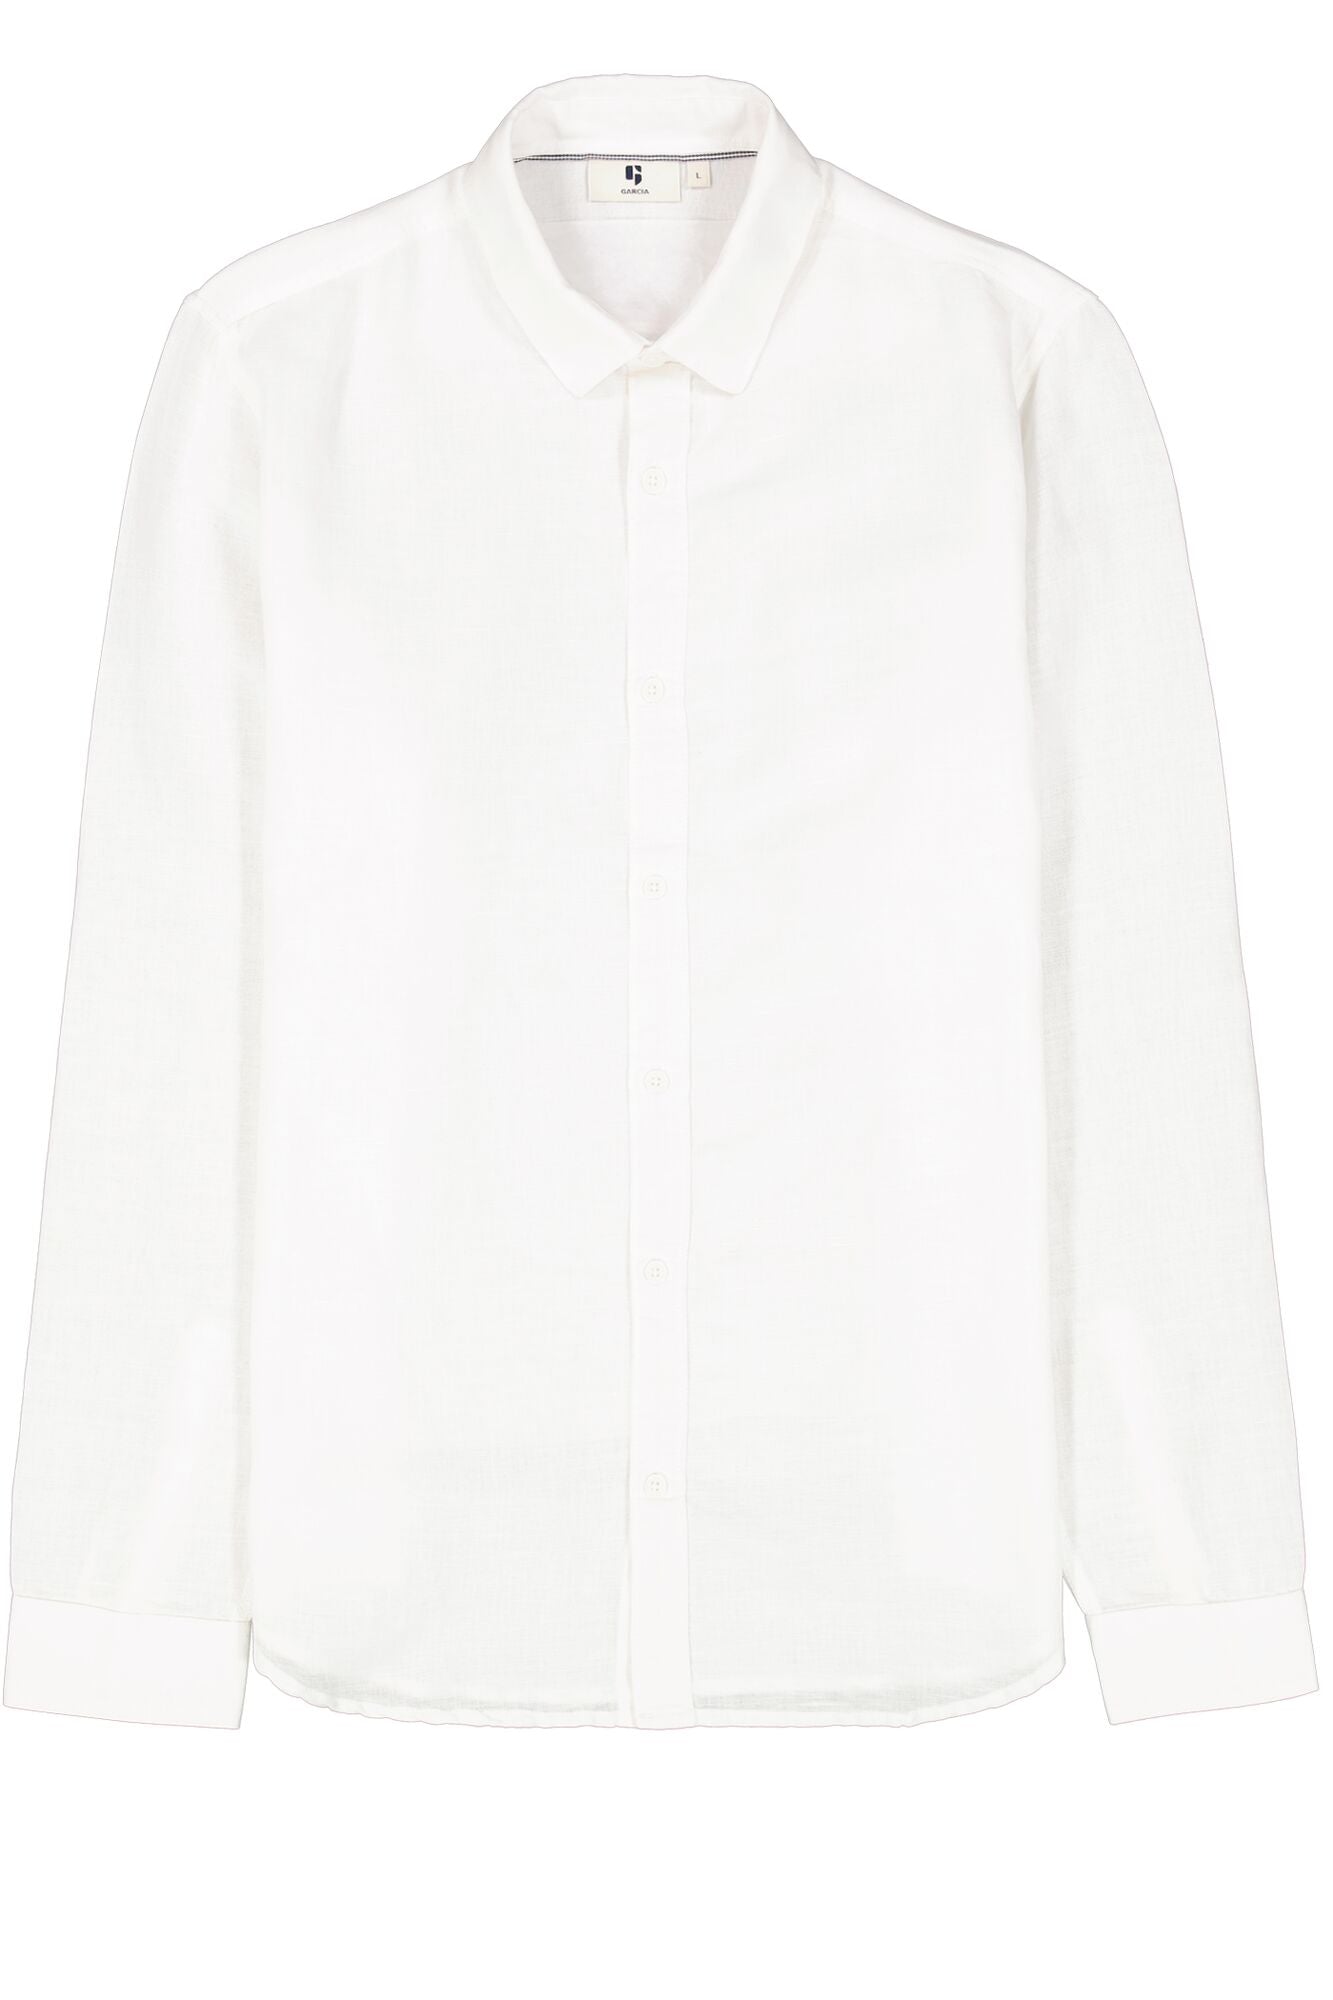 White shirt l/s Z1170 White